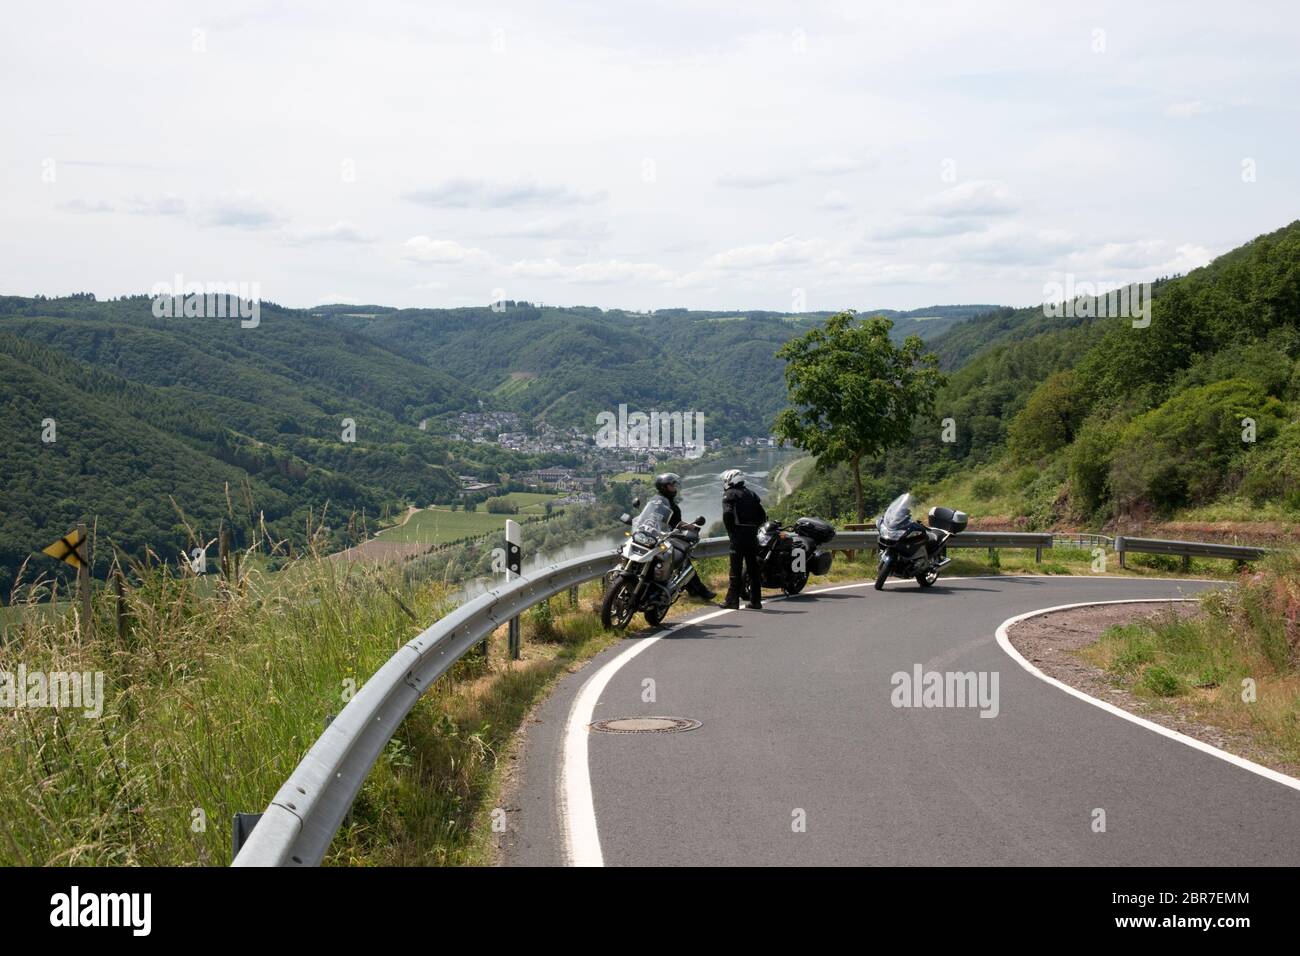 Blick vom Valwiggerberg ins Moseltal - Motorradfahrer geniessen die Aussicht, Valwig, Rheinland-Pfalz, Deutschland Stock Photo